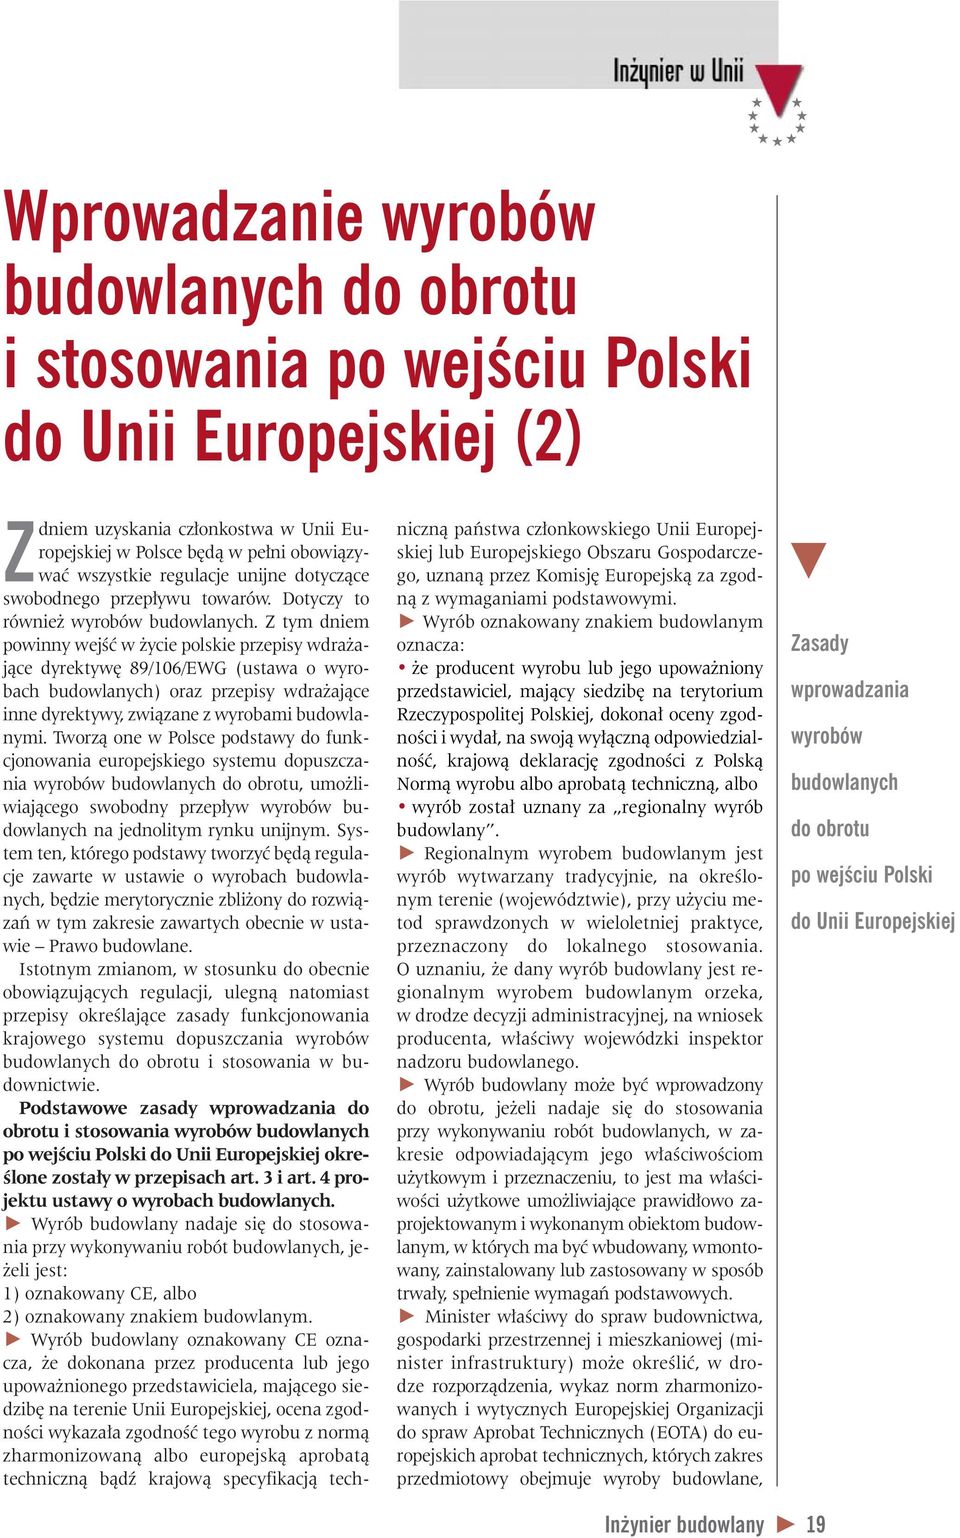 Z tym dniem powinny wejêç w ycie polskie przepisy wdra ajàce dyrektyw 89/106/EWG (ustawa o wyrobach budowlanych) oraz przepisy wdra ajàce inne dyrektywy, zwiàzane z wyrobami budowlanymi.